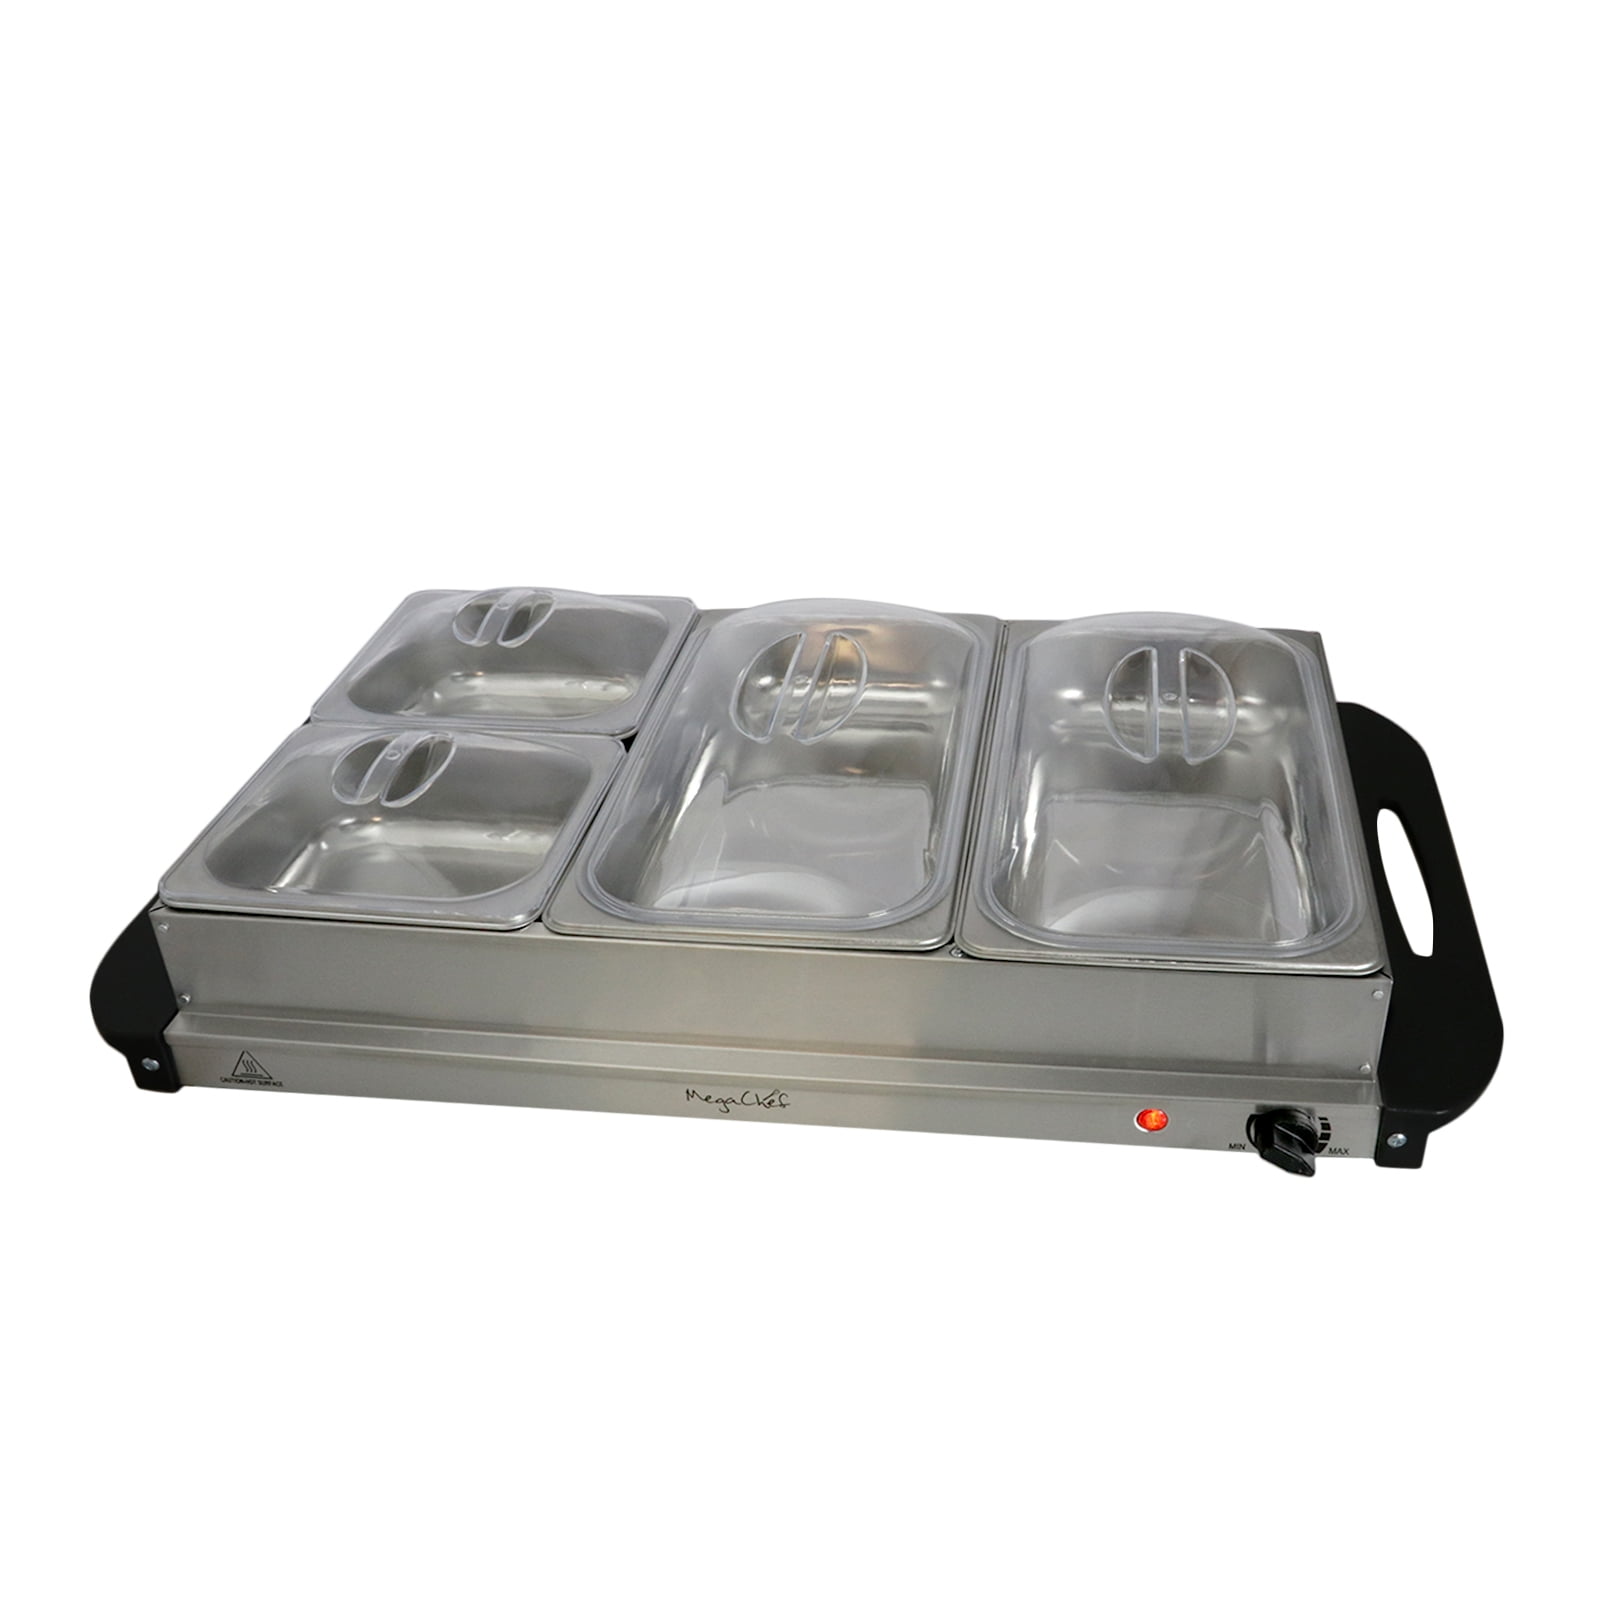 Food warmer, buffet heat trays x 4 - arc distribution